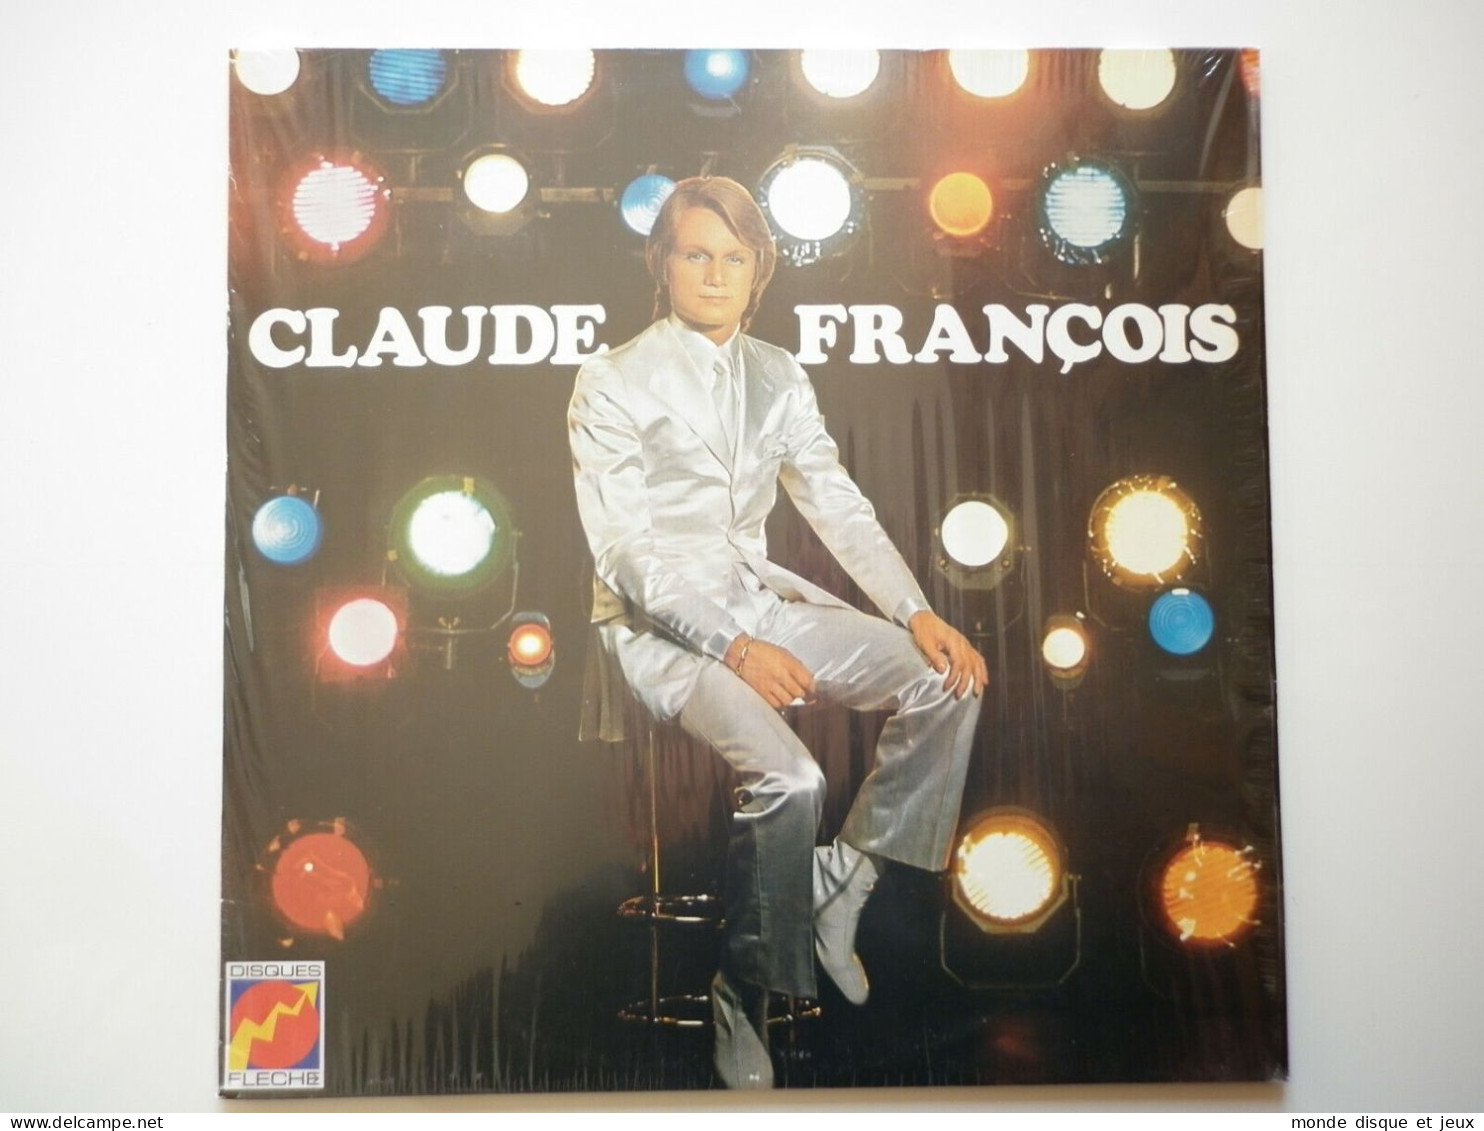 Claude François Album 33Tours Vinyle Le Lundi Au Soleil - Otros - Canción Francesa